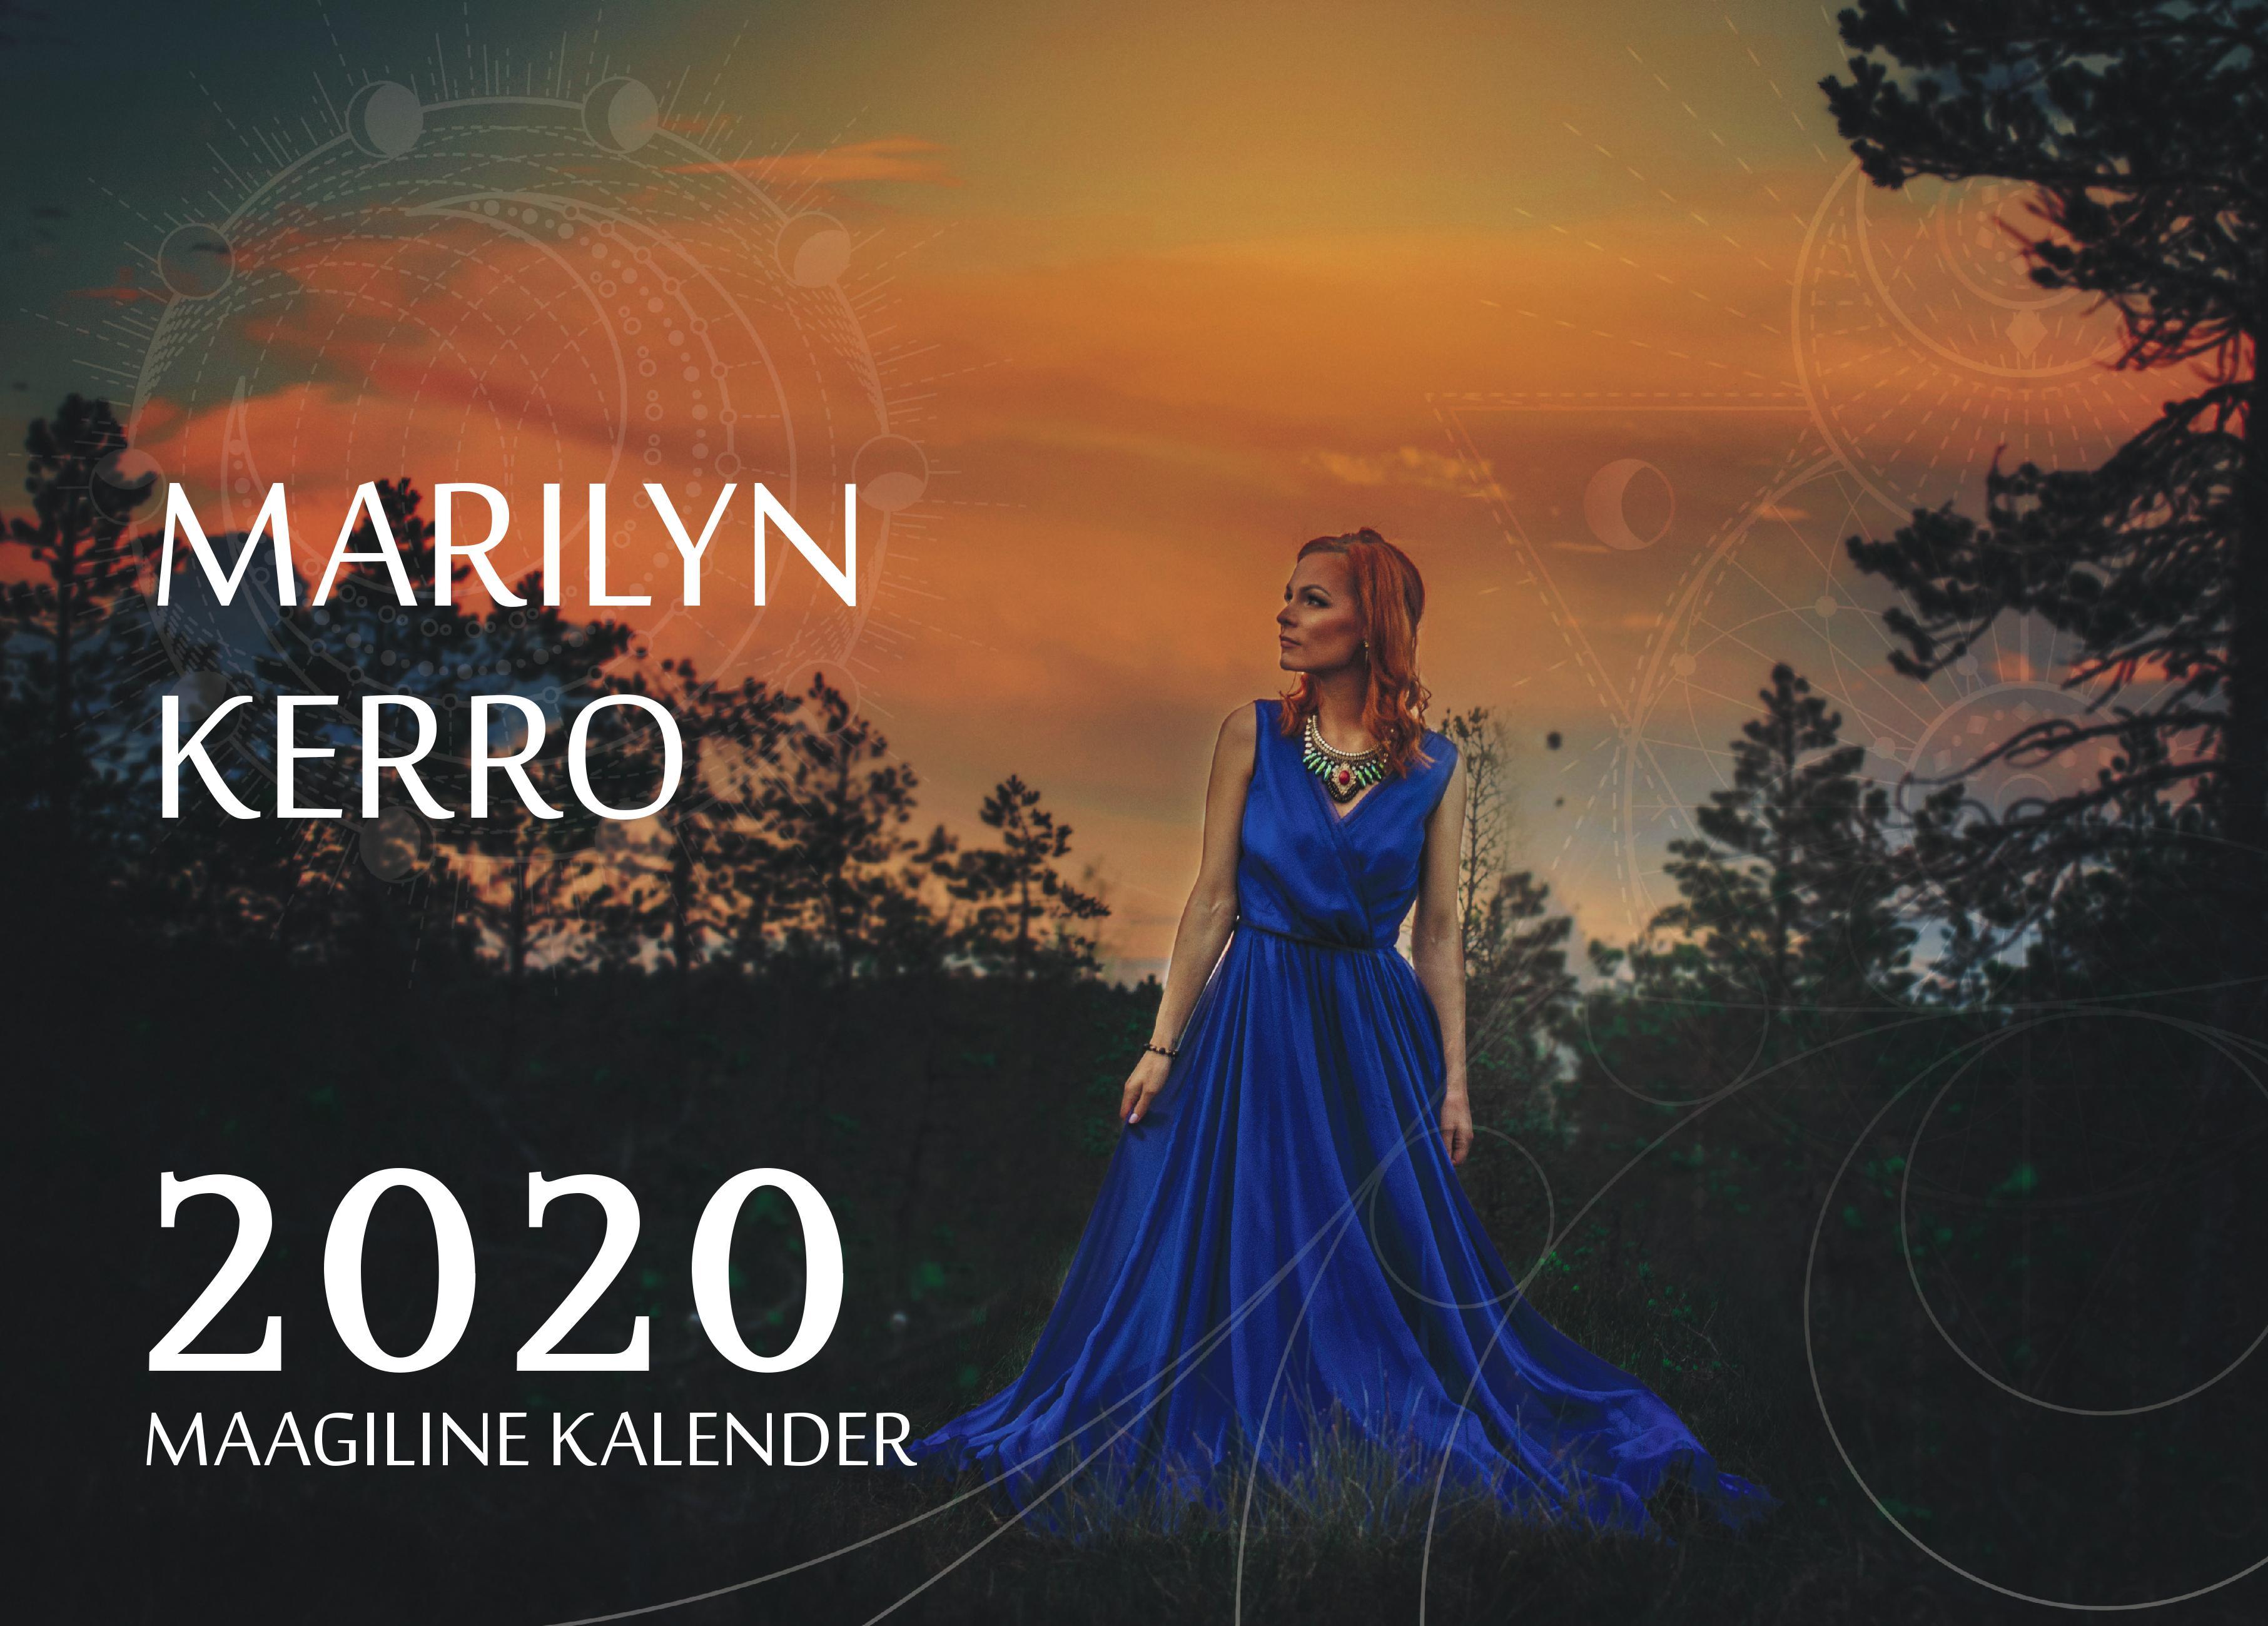 MARILYN KERRO MAAGILINE KALENDER 2020